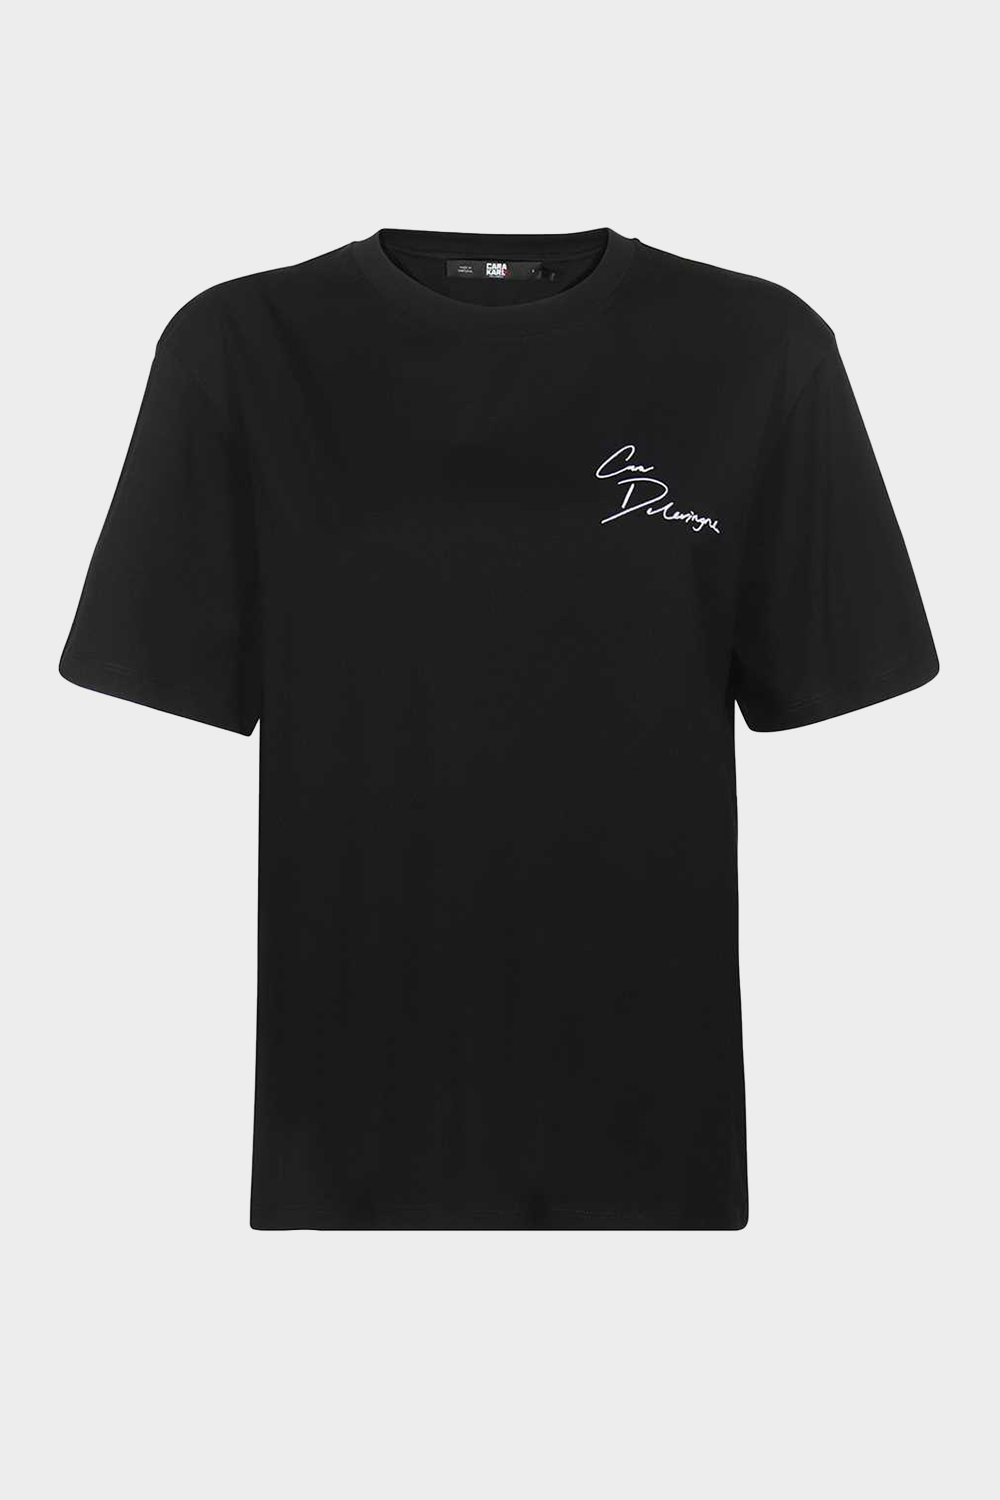 חולצת טי שירט לנשים בצבע שחור KARL LAGERFELD Vendome online | ונדום .